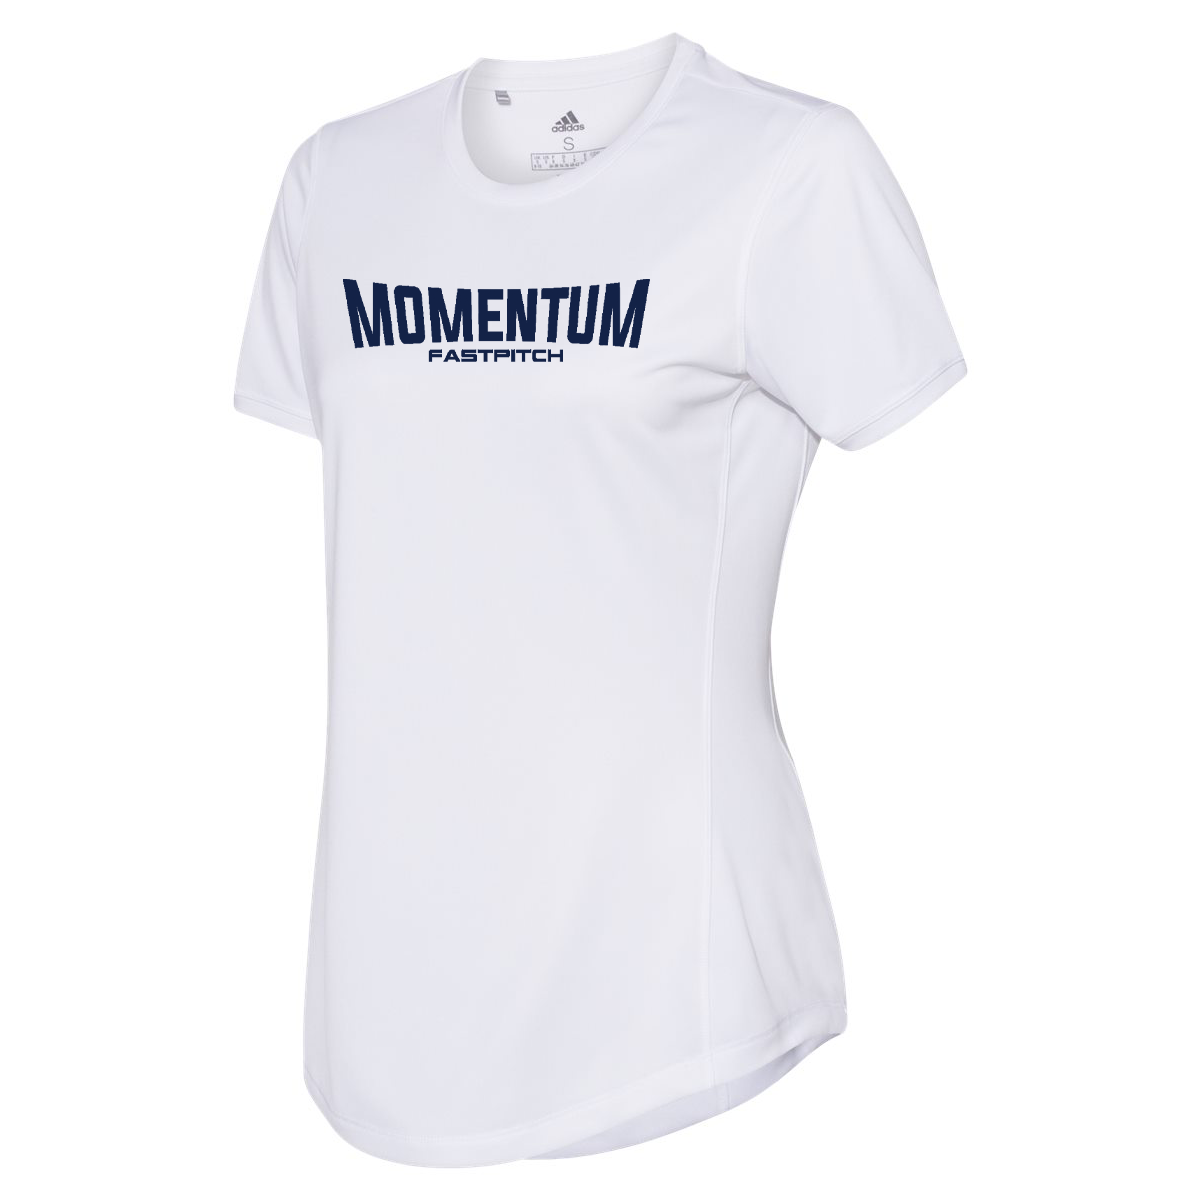 Momentum Fastpitch Women's Adidas Sport T-Shirt